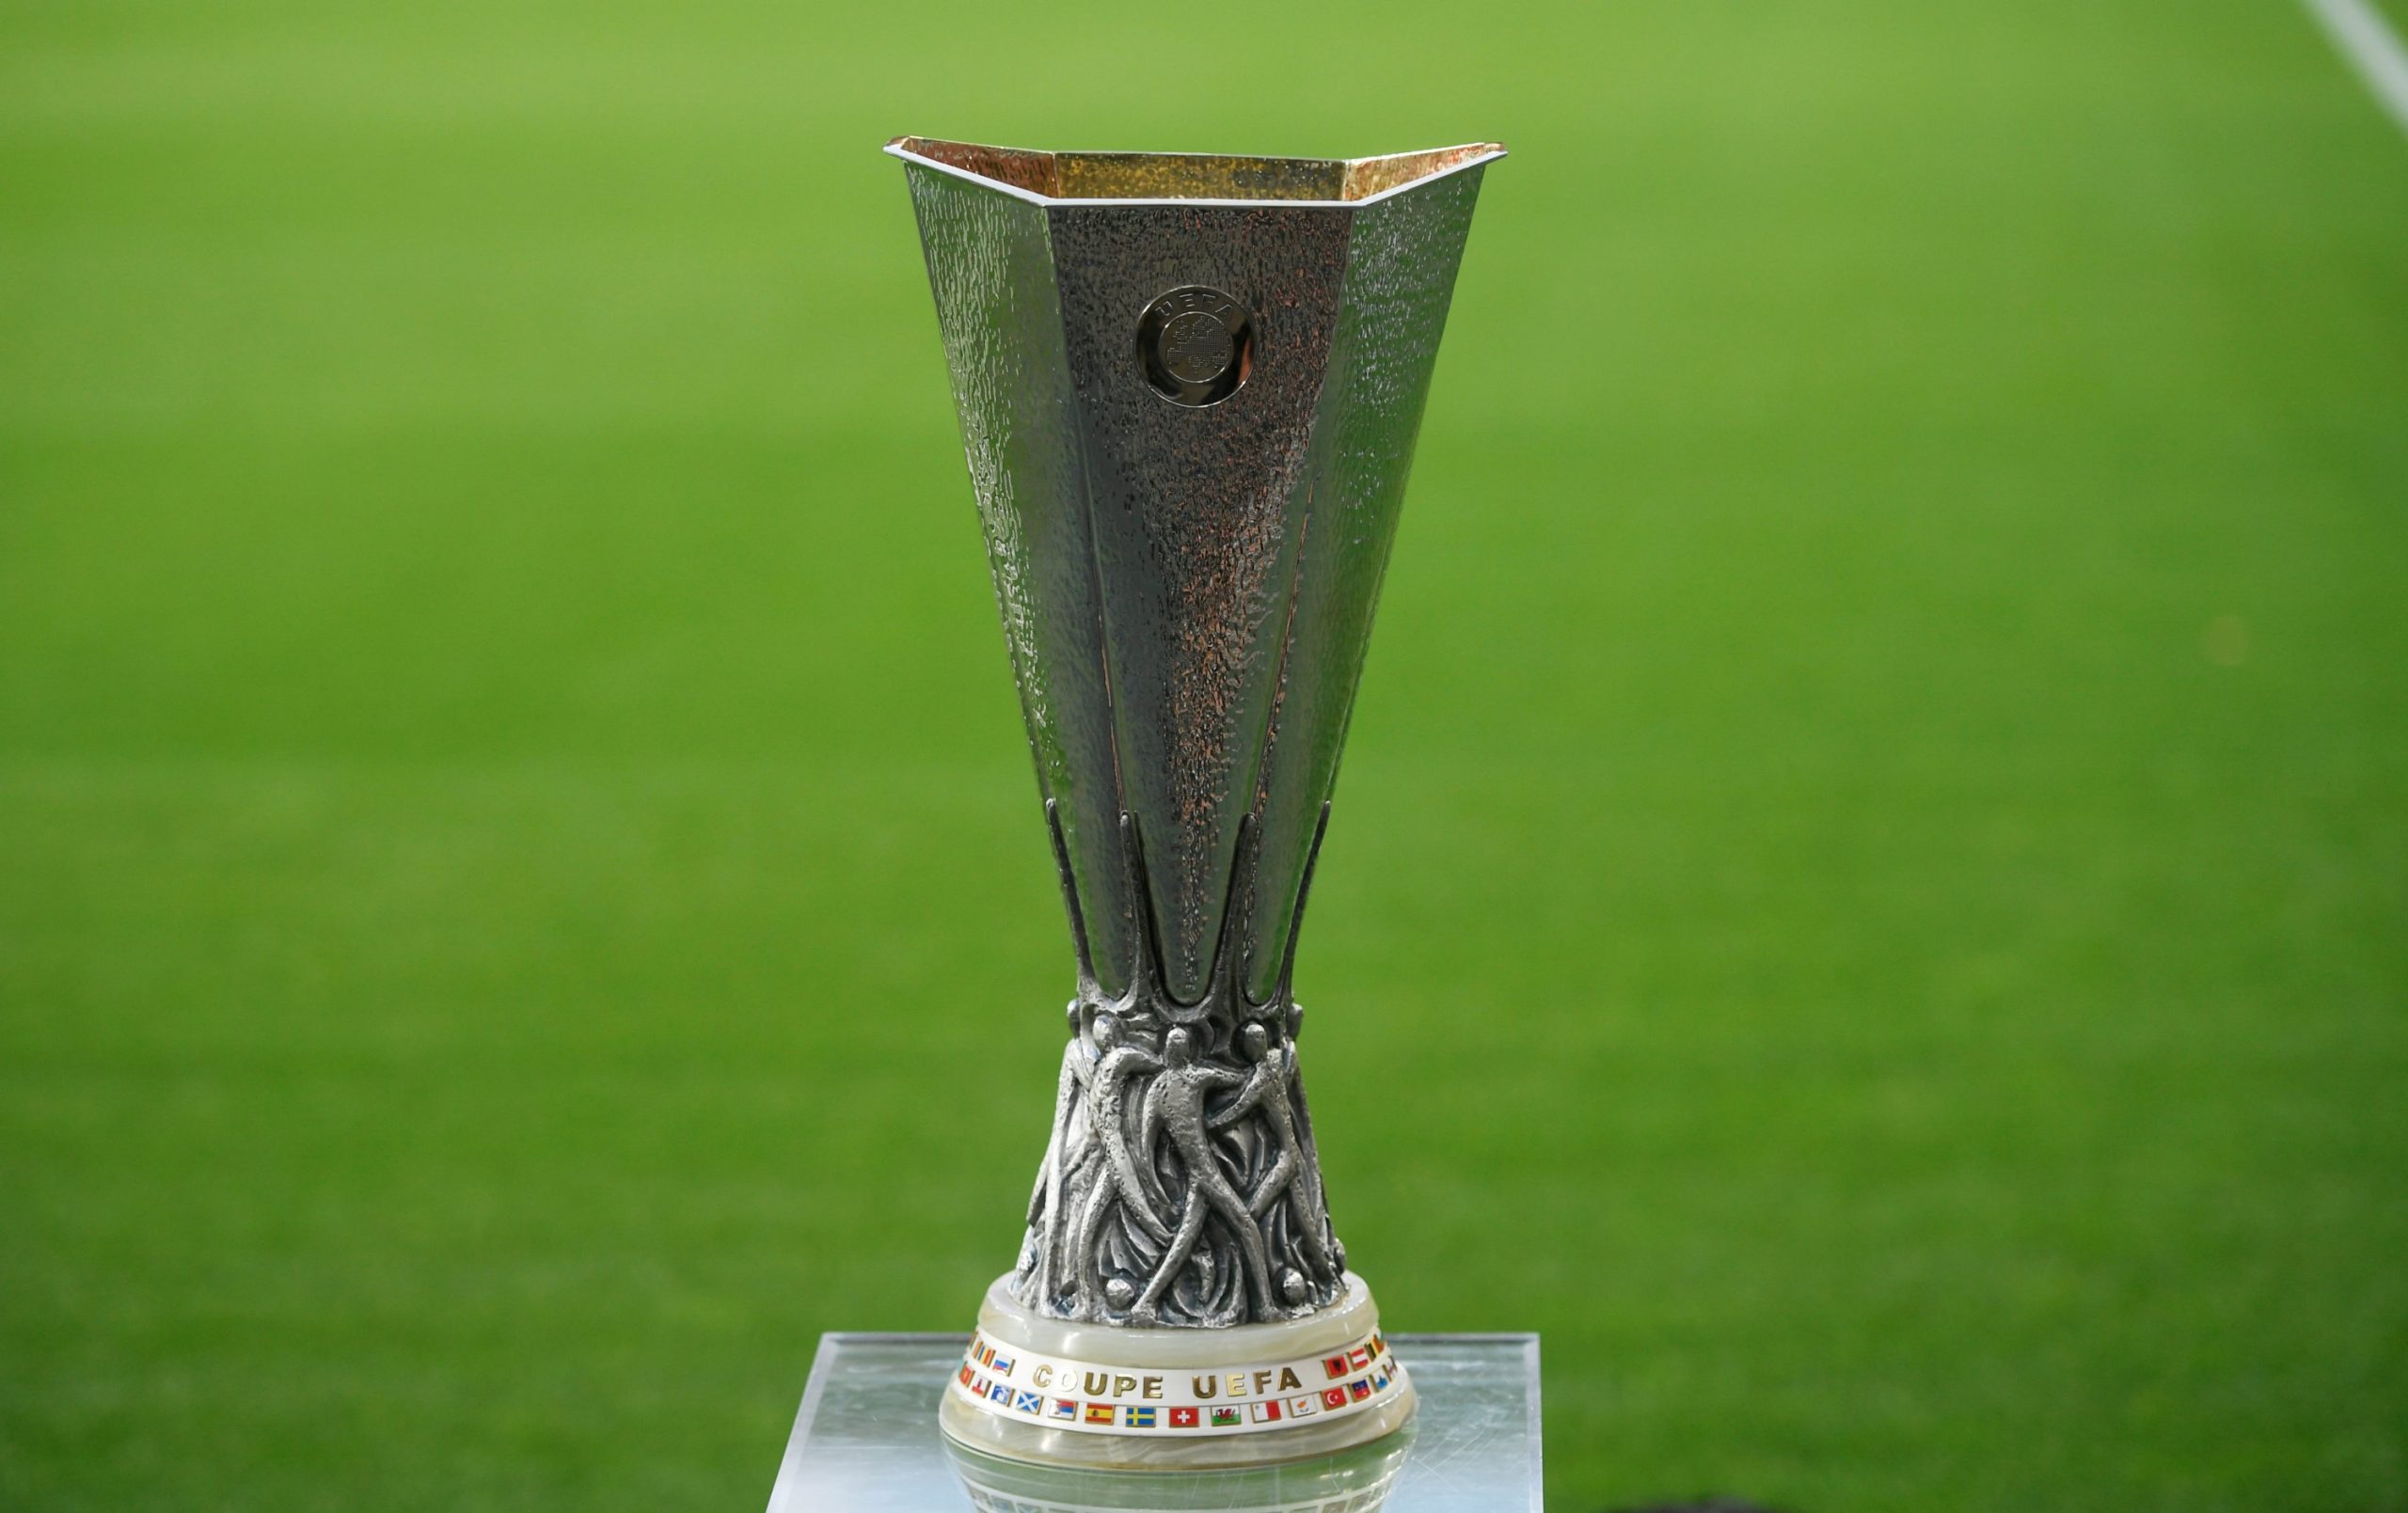 Europa Trophy